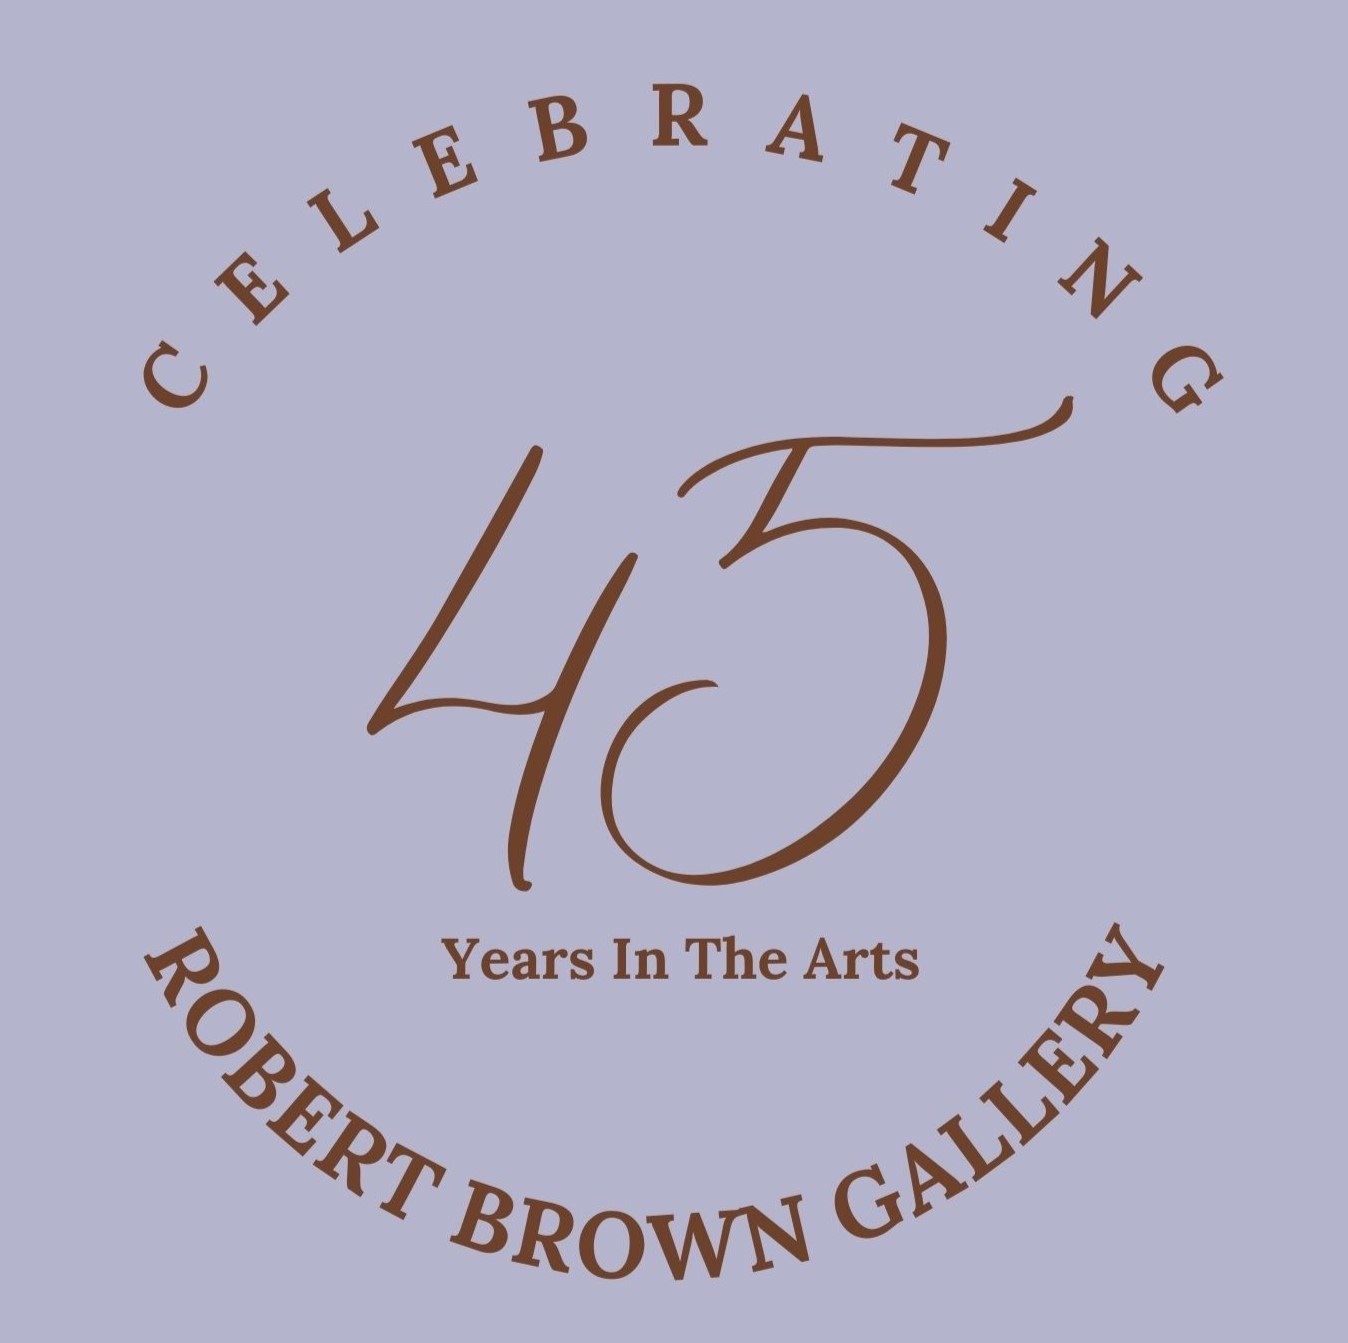 Celebrating 45 Years of Robert Brown Gallery